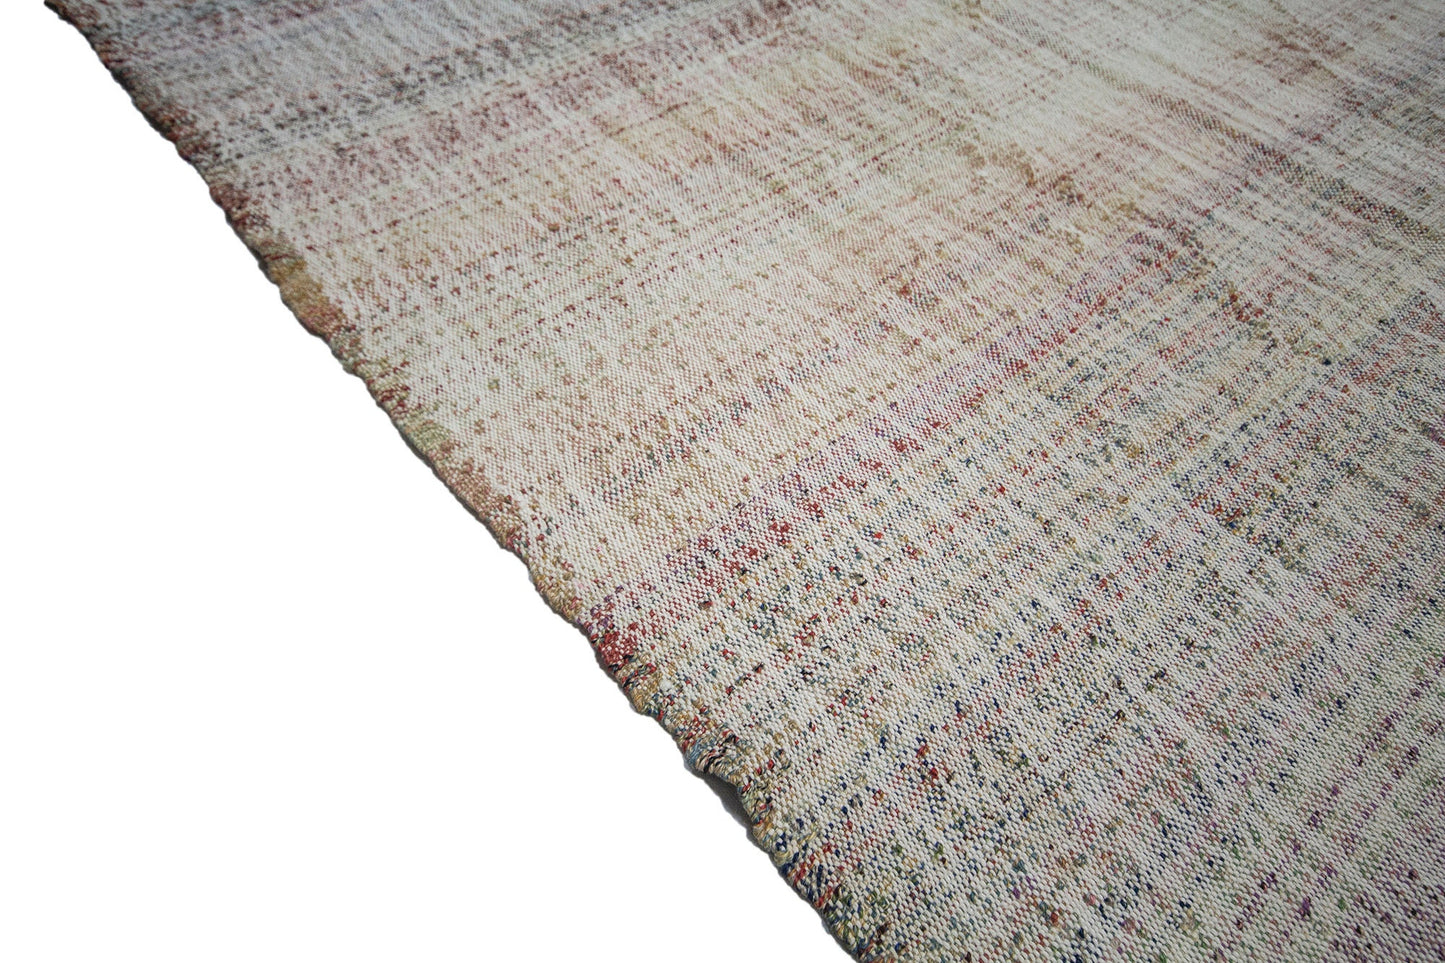 Turkish rug ,Chaput rug, Kilim rug, Vintage rug, Contemporary rug, Area rug 5x8, Faded rug, Kilim rug 5x8, Floor İndoor Coastal rug, 1304